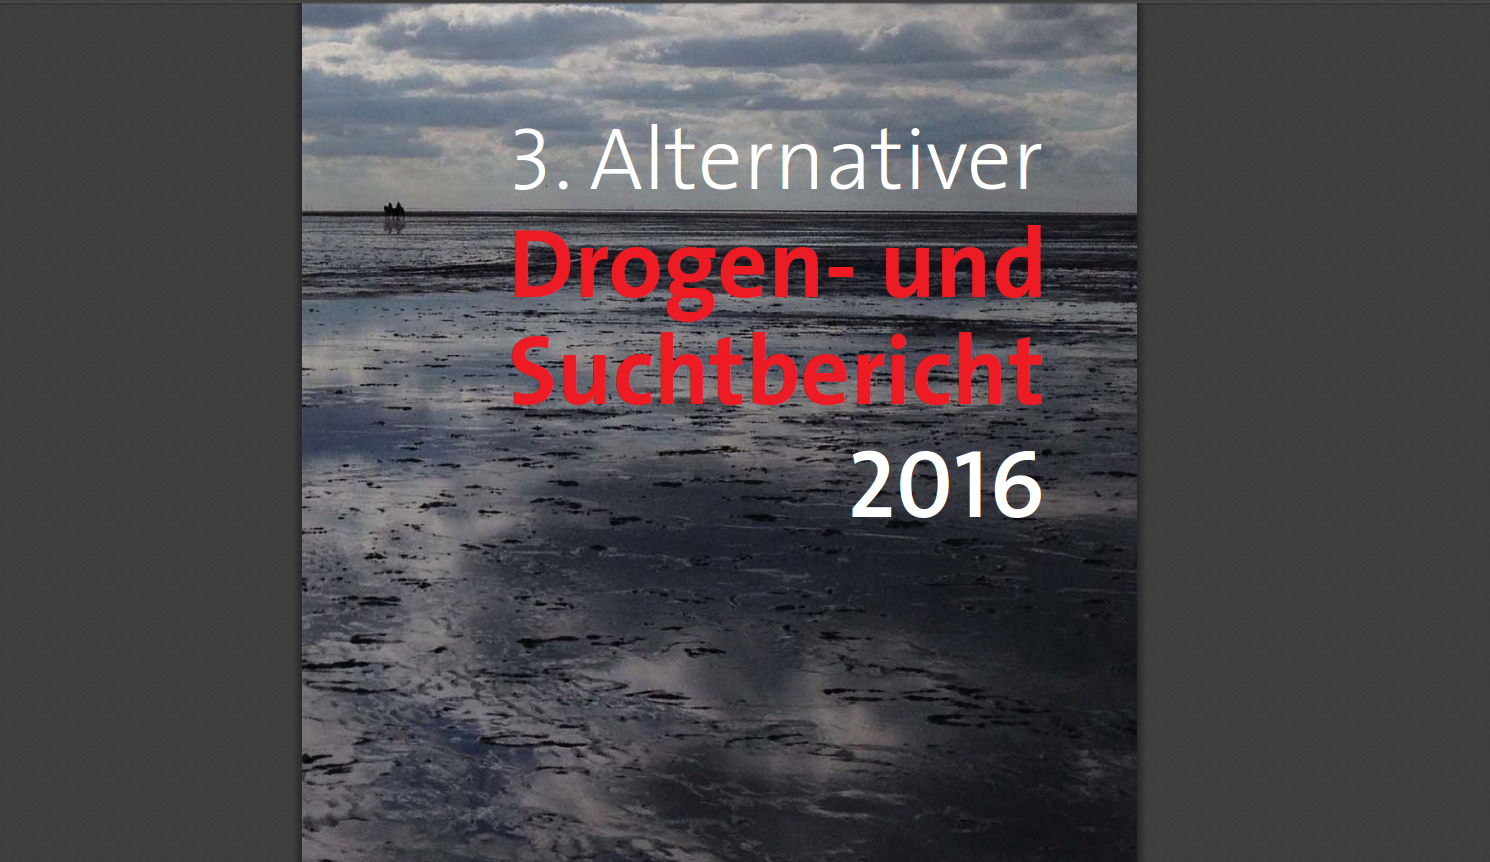 Alternativer Drogen-und Suchtbericht 2016 in Berlin veröffentlicht